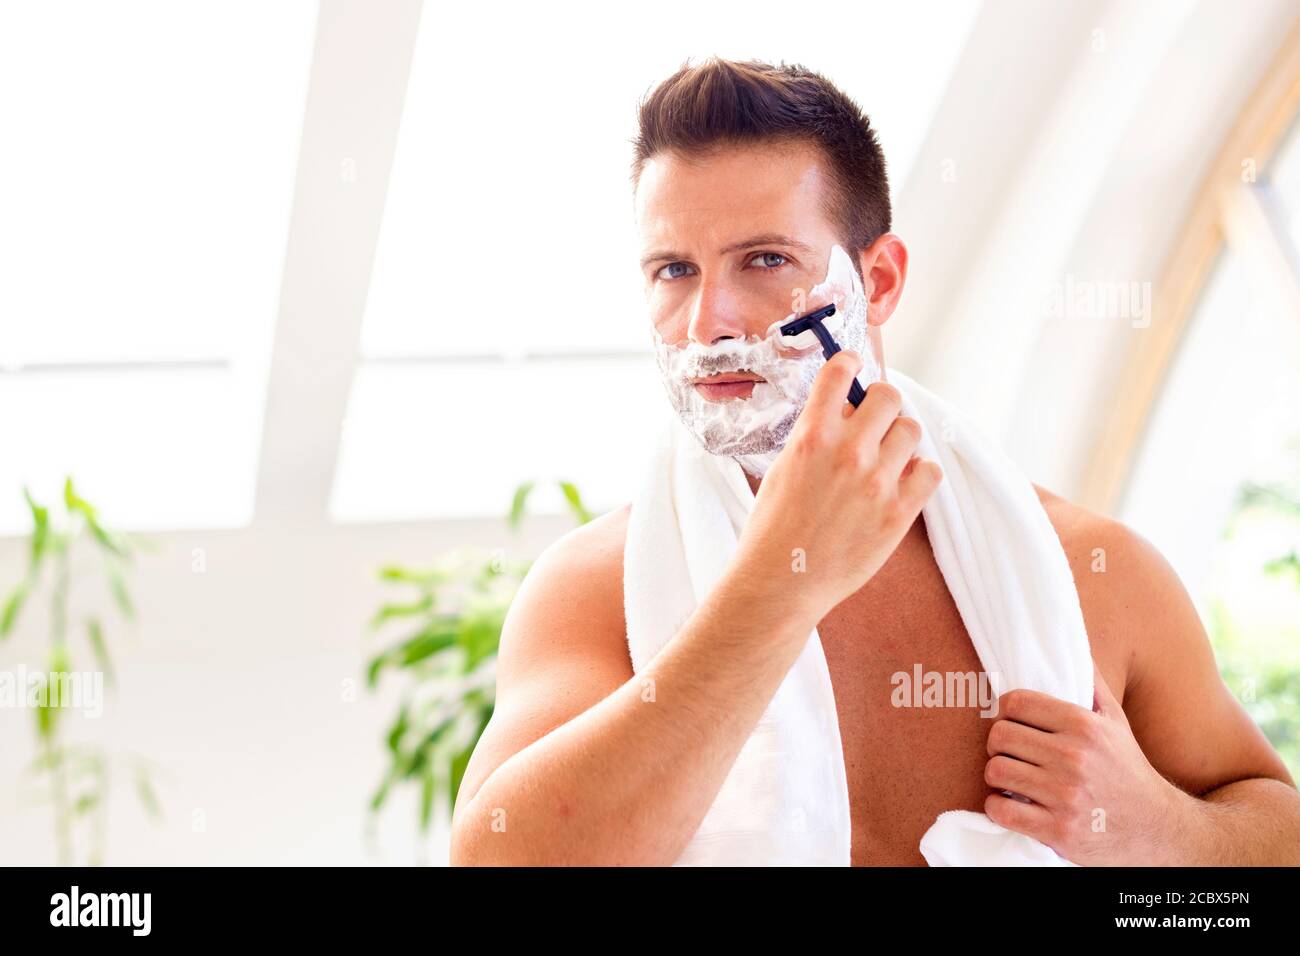 Prise de vue d'un beau homme avec une serviette autour de son cou en  utilisant de la mousse à raser tout en se secouant devant le miroir de la  salle de bains